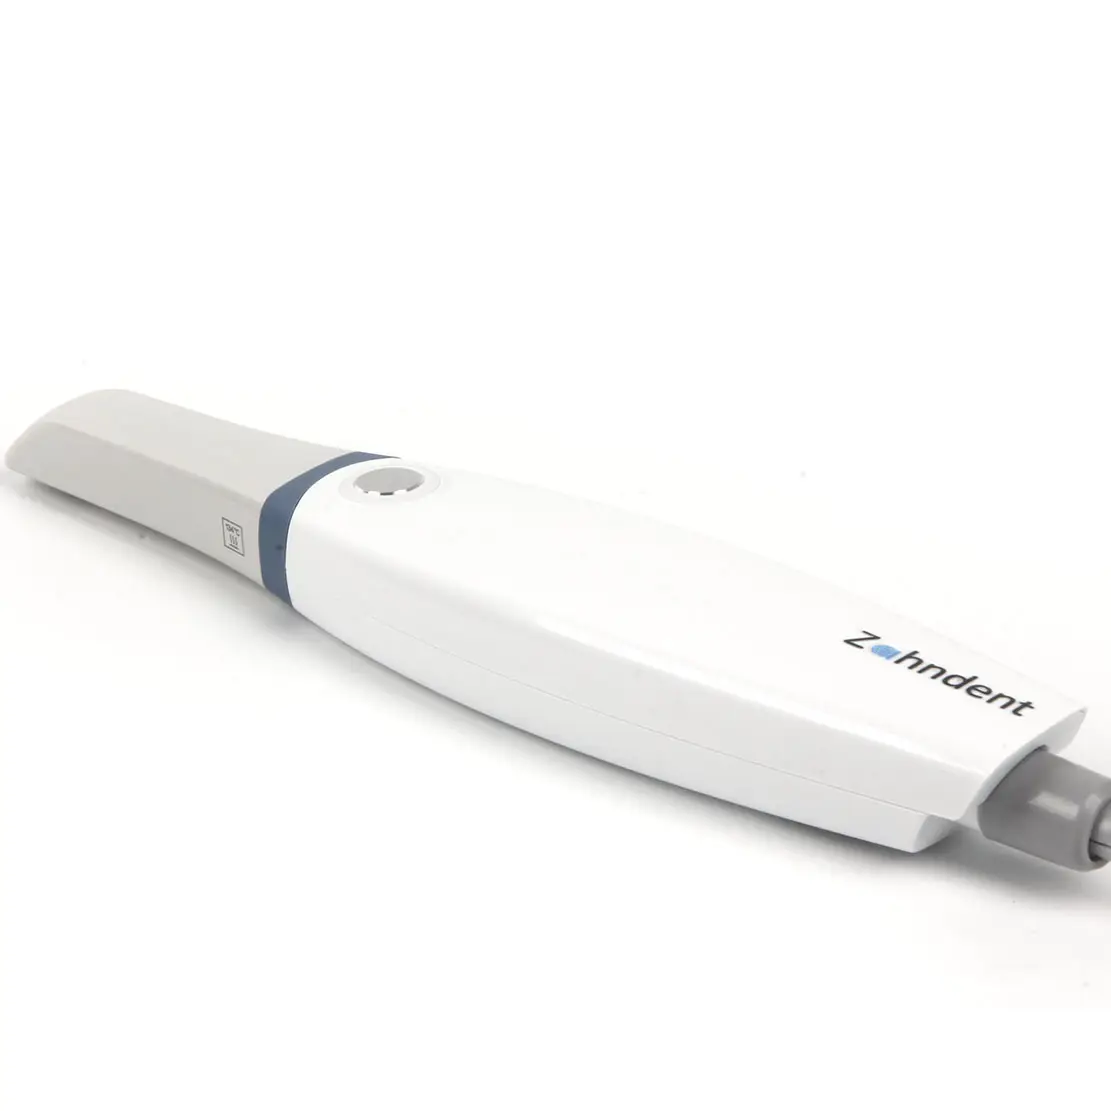 Zahndent 80 mm/s velocidad de escaneo equipo de imagen dental escáner intraoral para clínica dental